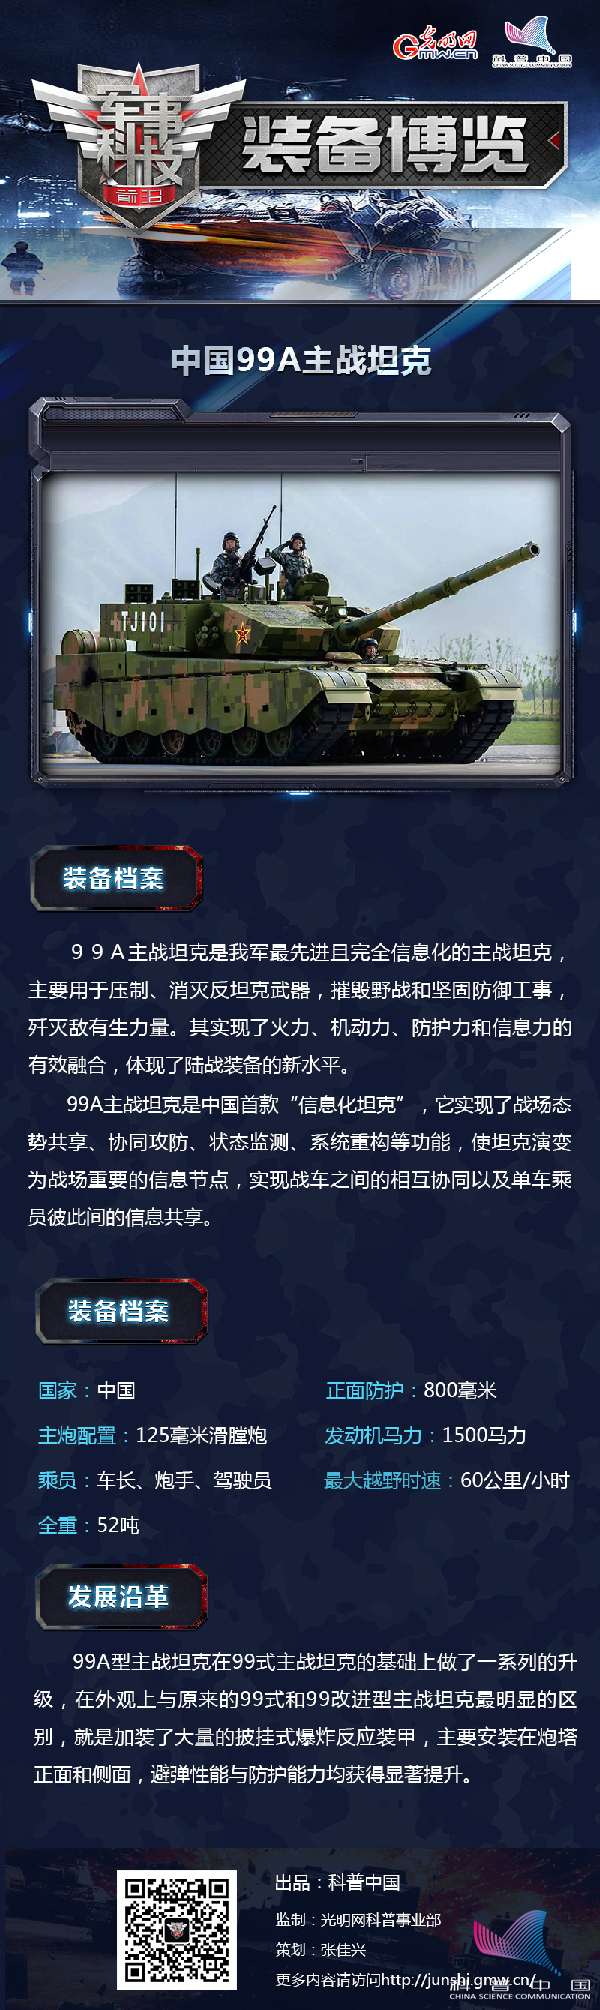 99A型主战坦克凭什么称为“陆战之王”